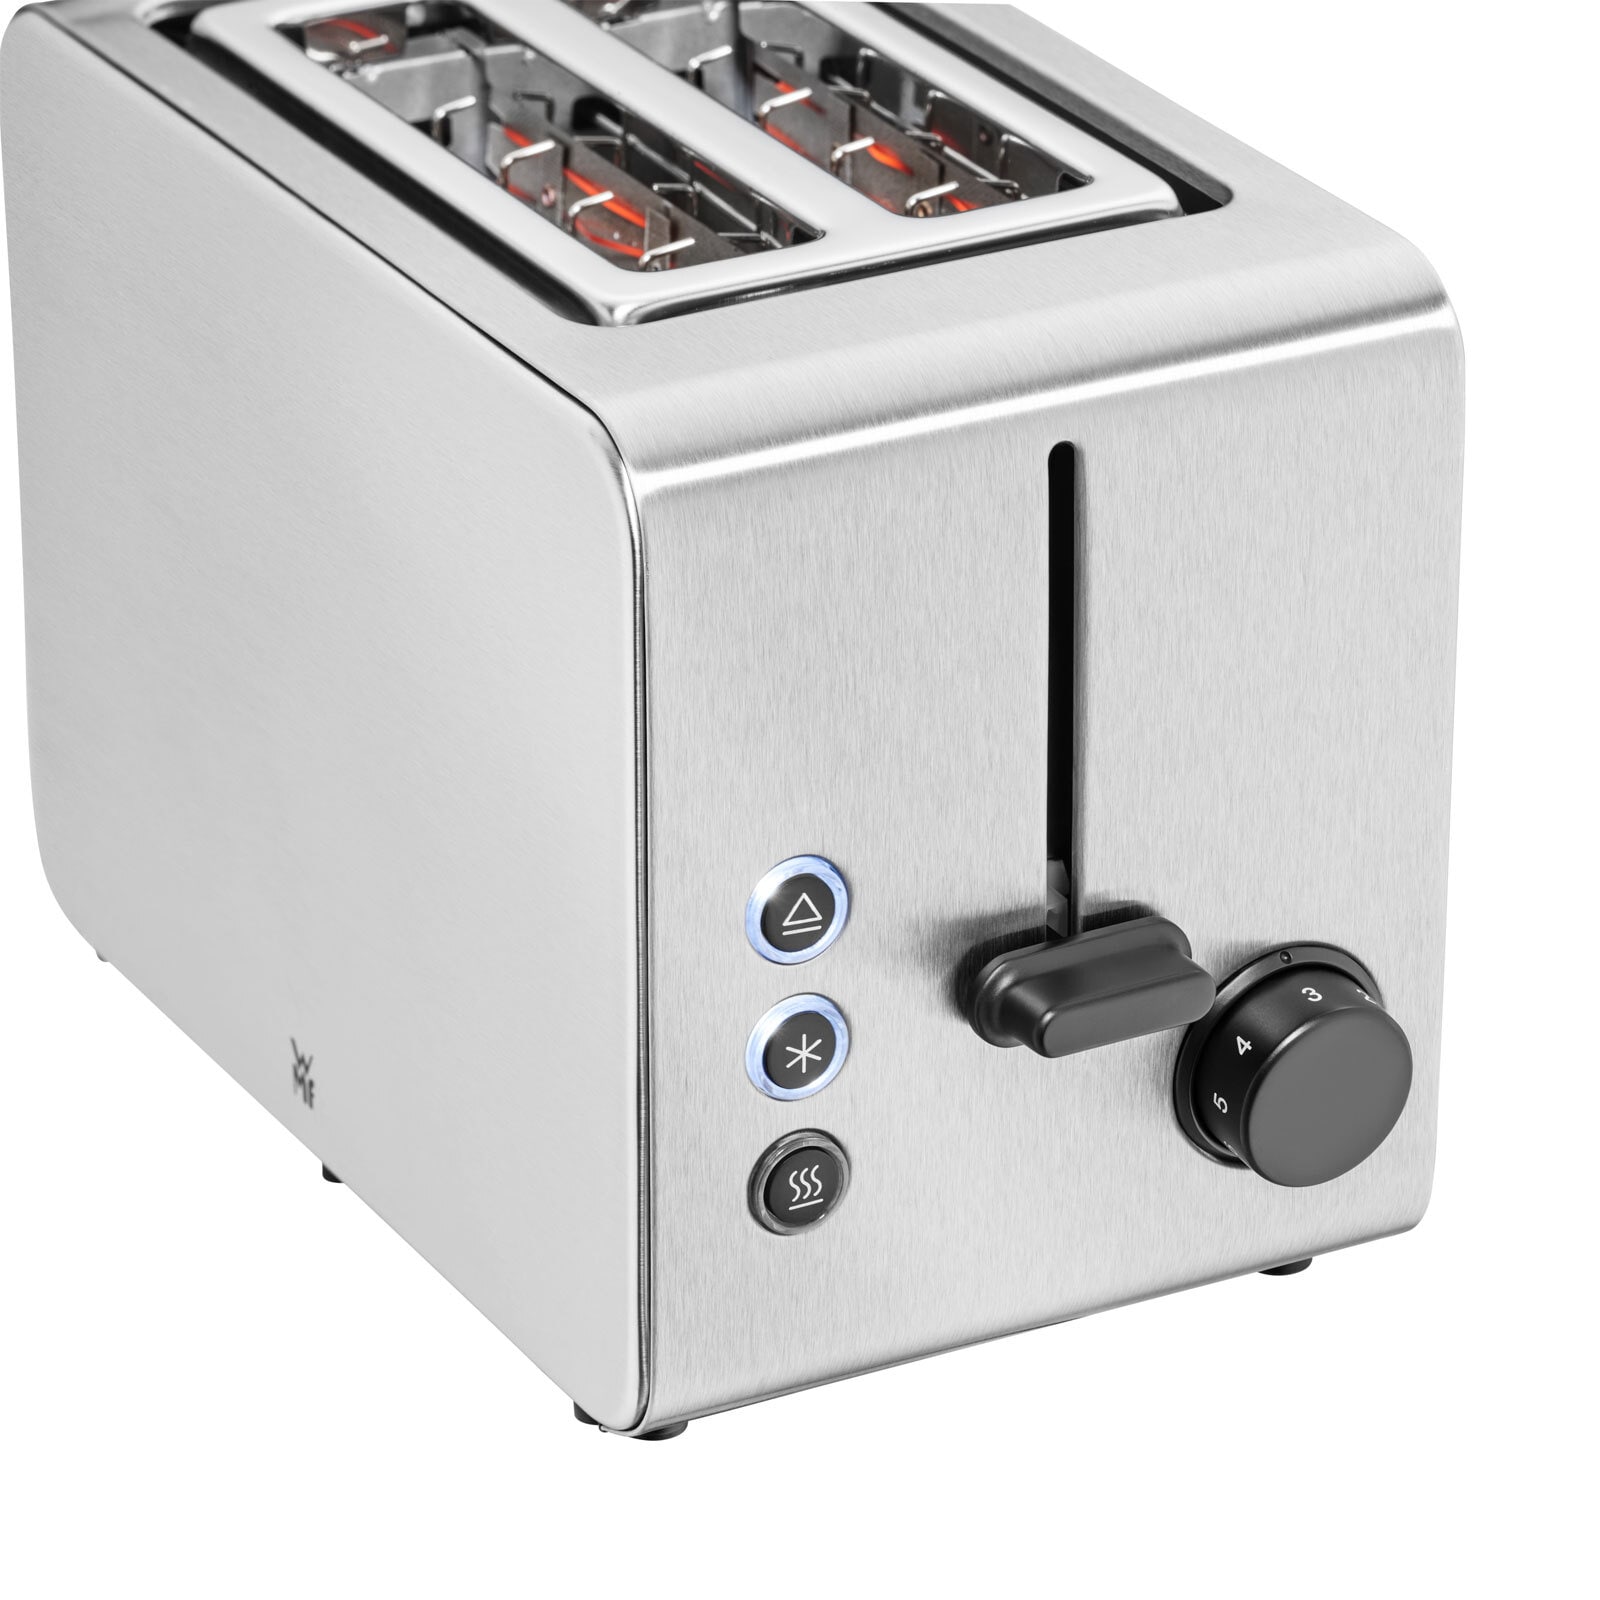 WMF Toaster STELIO seidenmatt